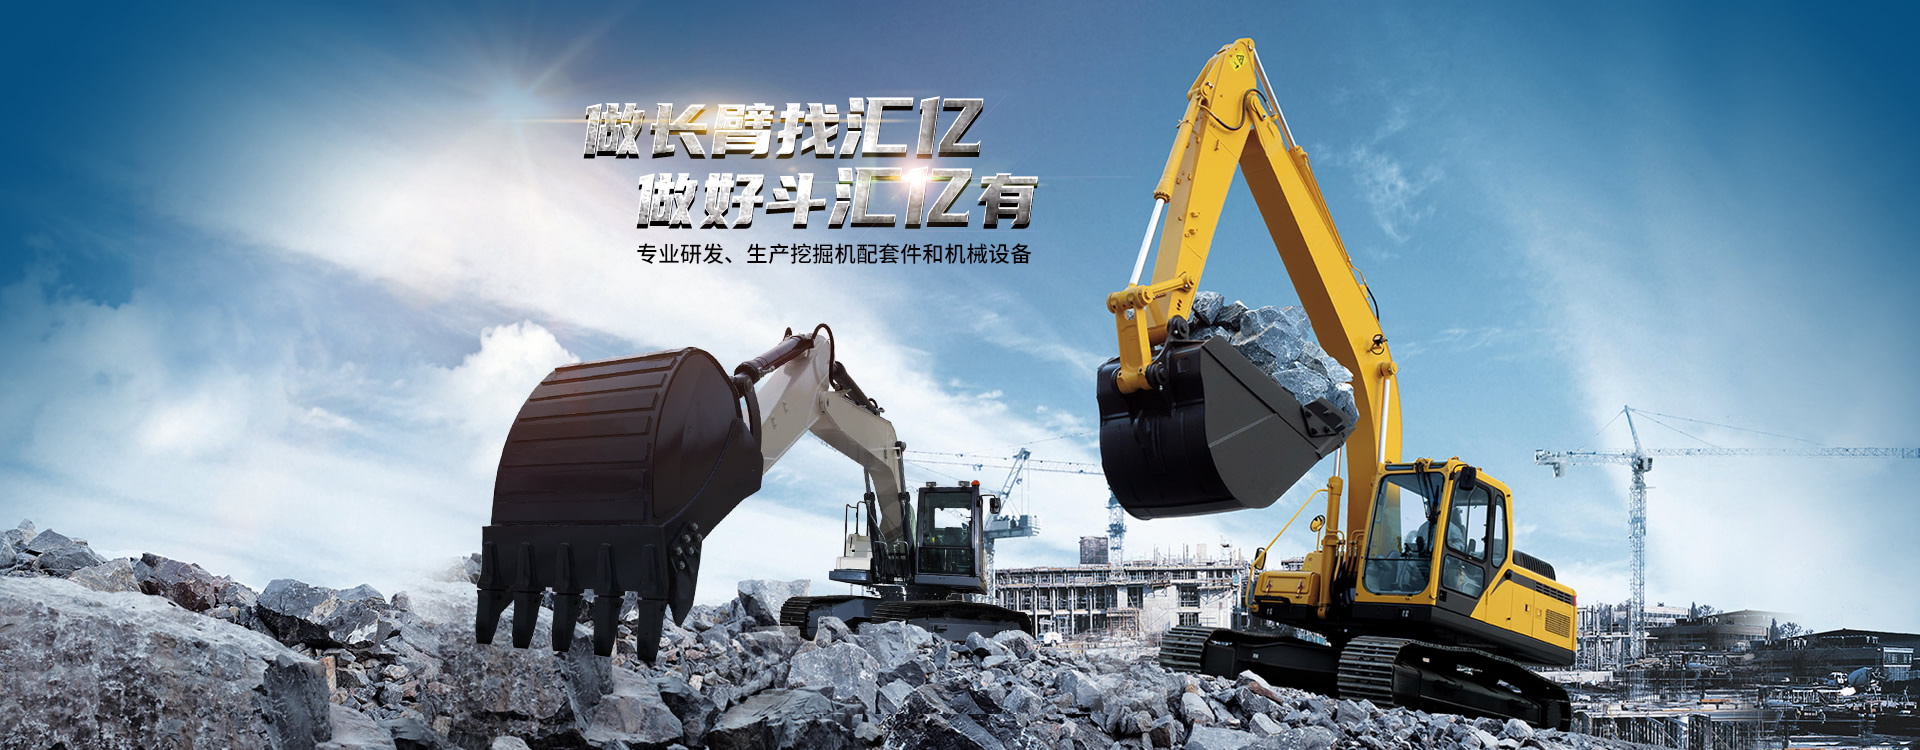 广州市汇亿重工机械有限公司